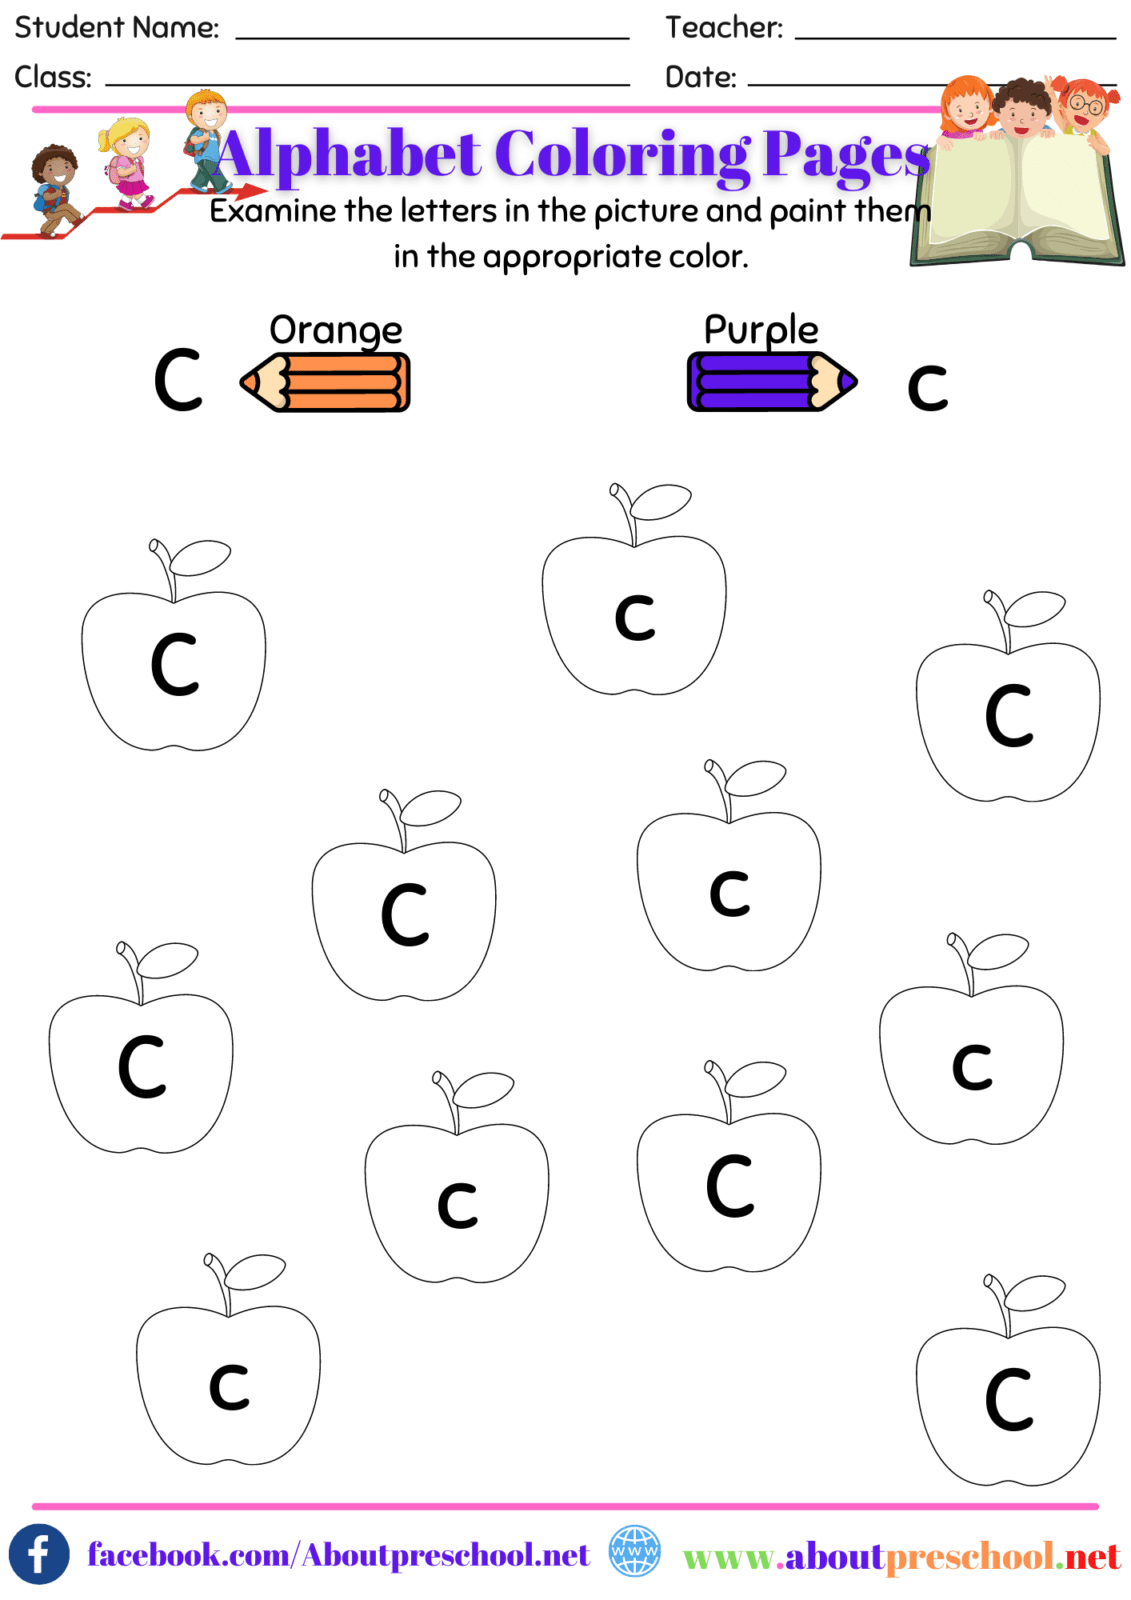 Alphabet Color Pages-C